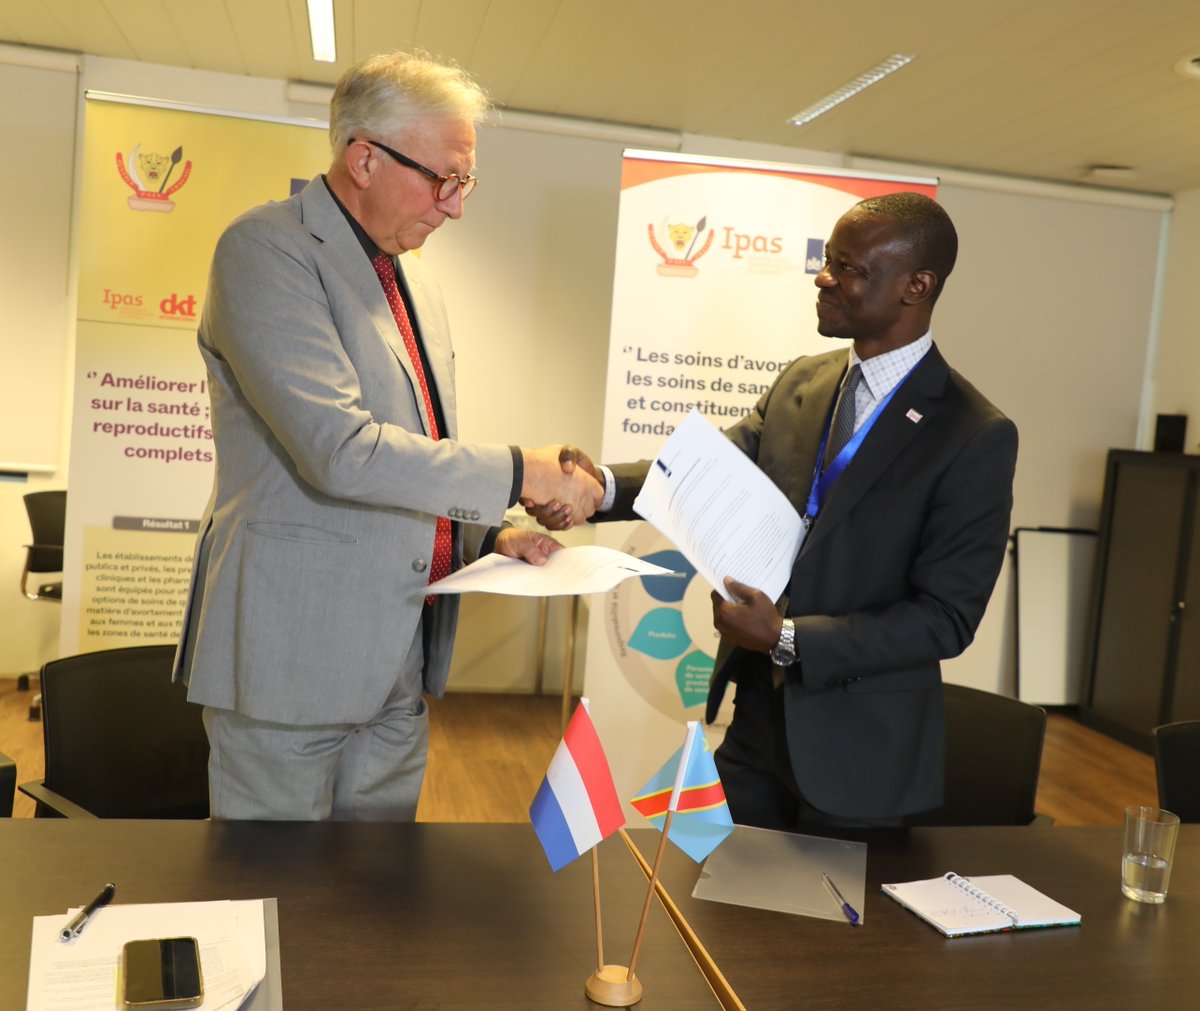 L’ambassade des Pays-Bas en #RDC est heureuse d’annoncer la signature du contrat de partenariat avec le consortium dont @IpasRDC a le lead afin d’améliorer l’accès à l’information sur la santé et les droits sexuels et reproductifs de la femme à #Kinshasa et à la #Tshopo